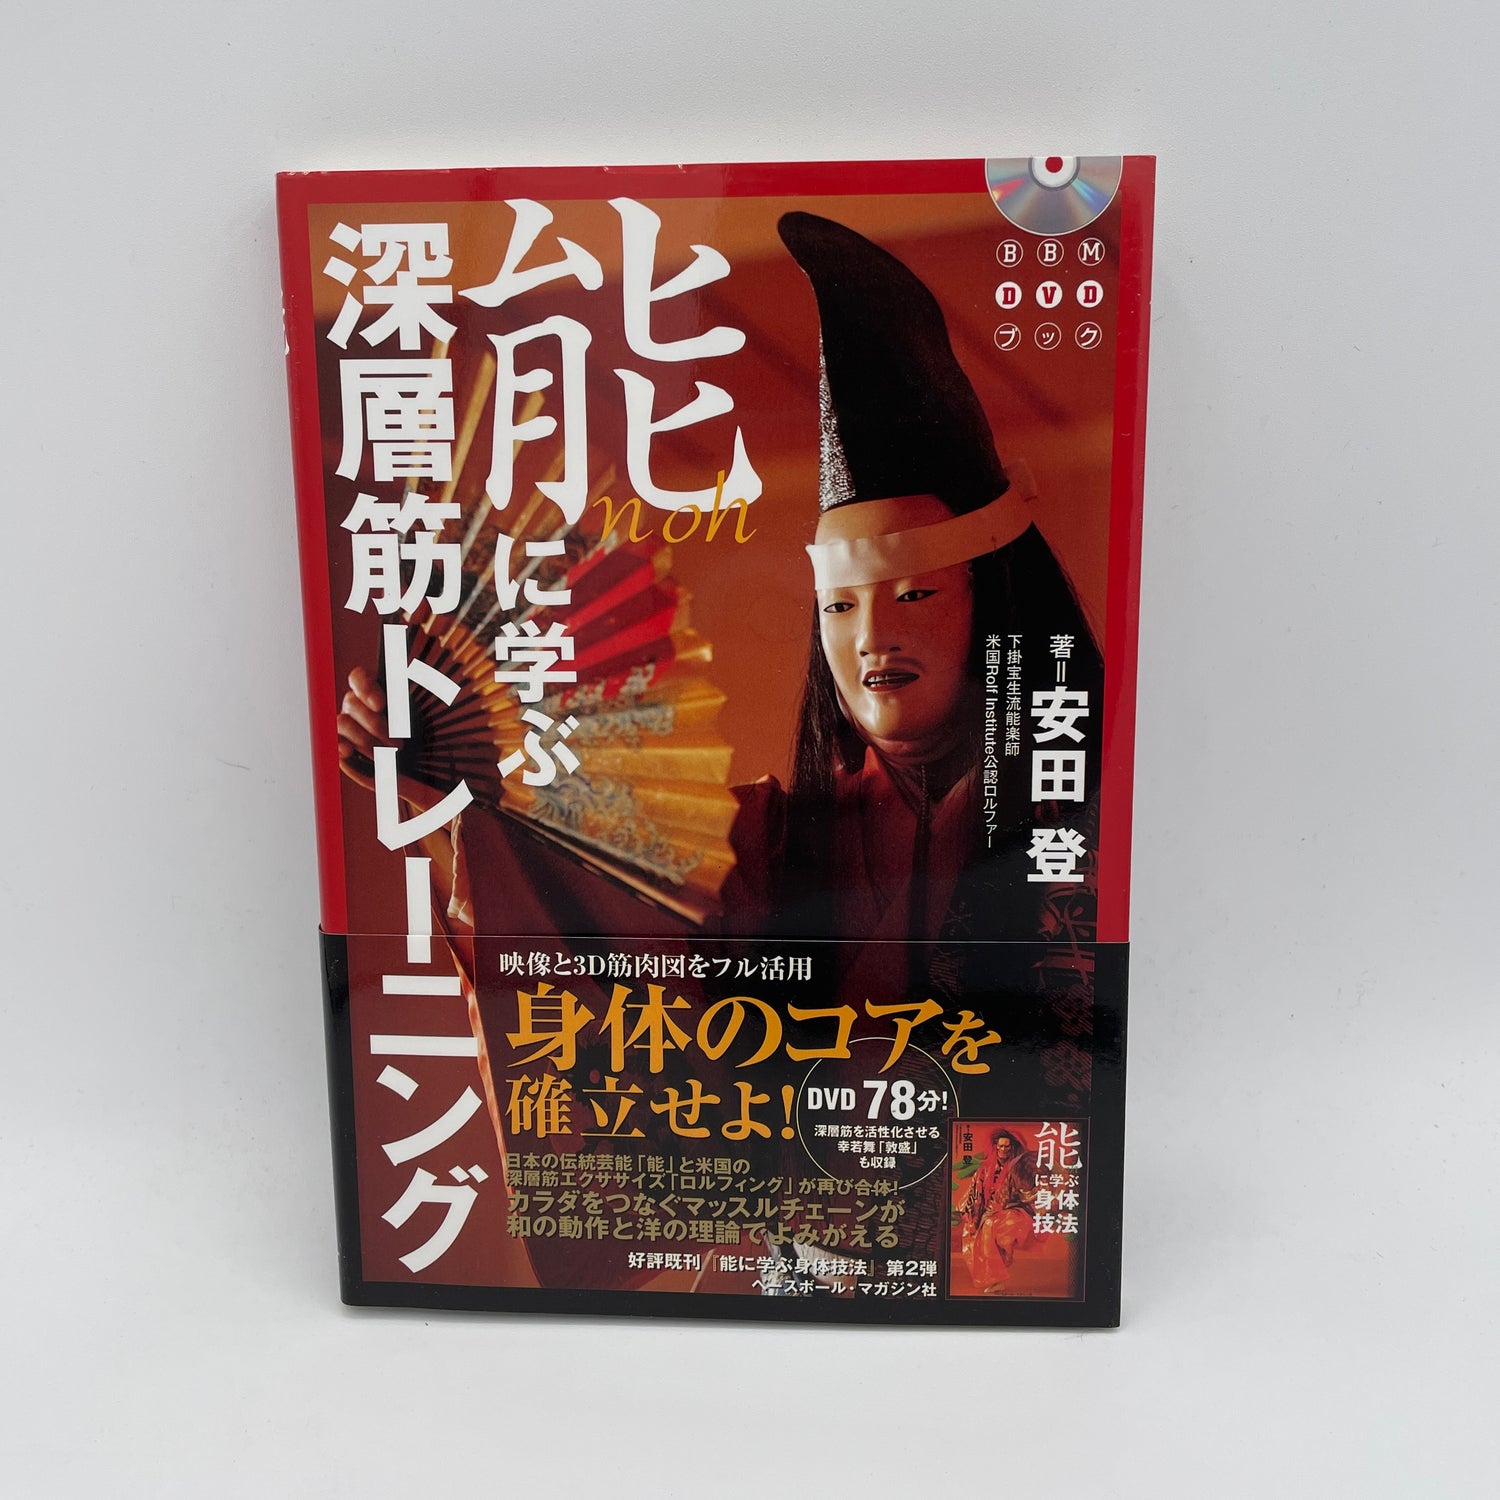 Libro y DVD de entrenamiento muscular profundo Noh (Región 2) de Noboru Yasuda (usado)